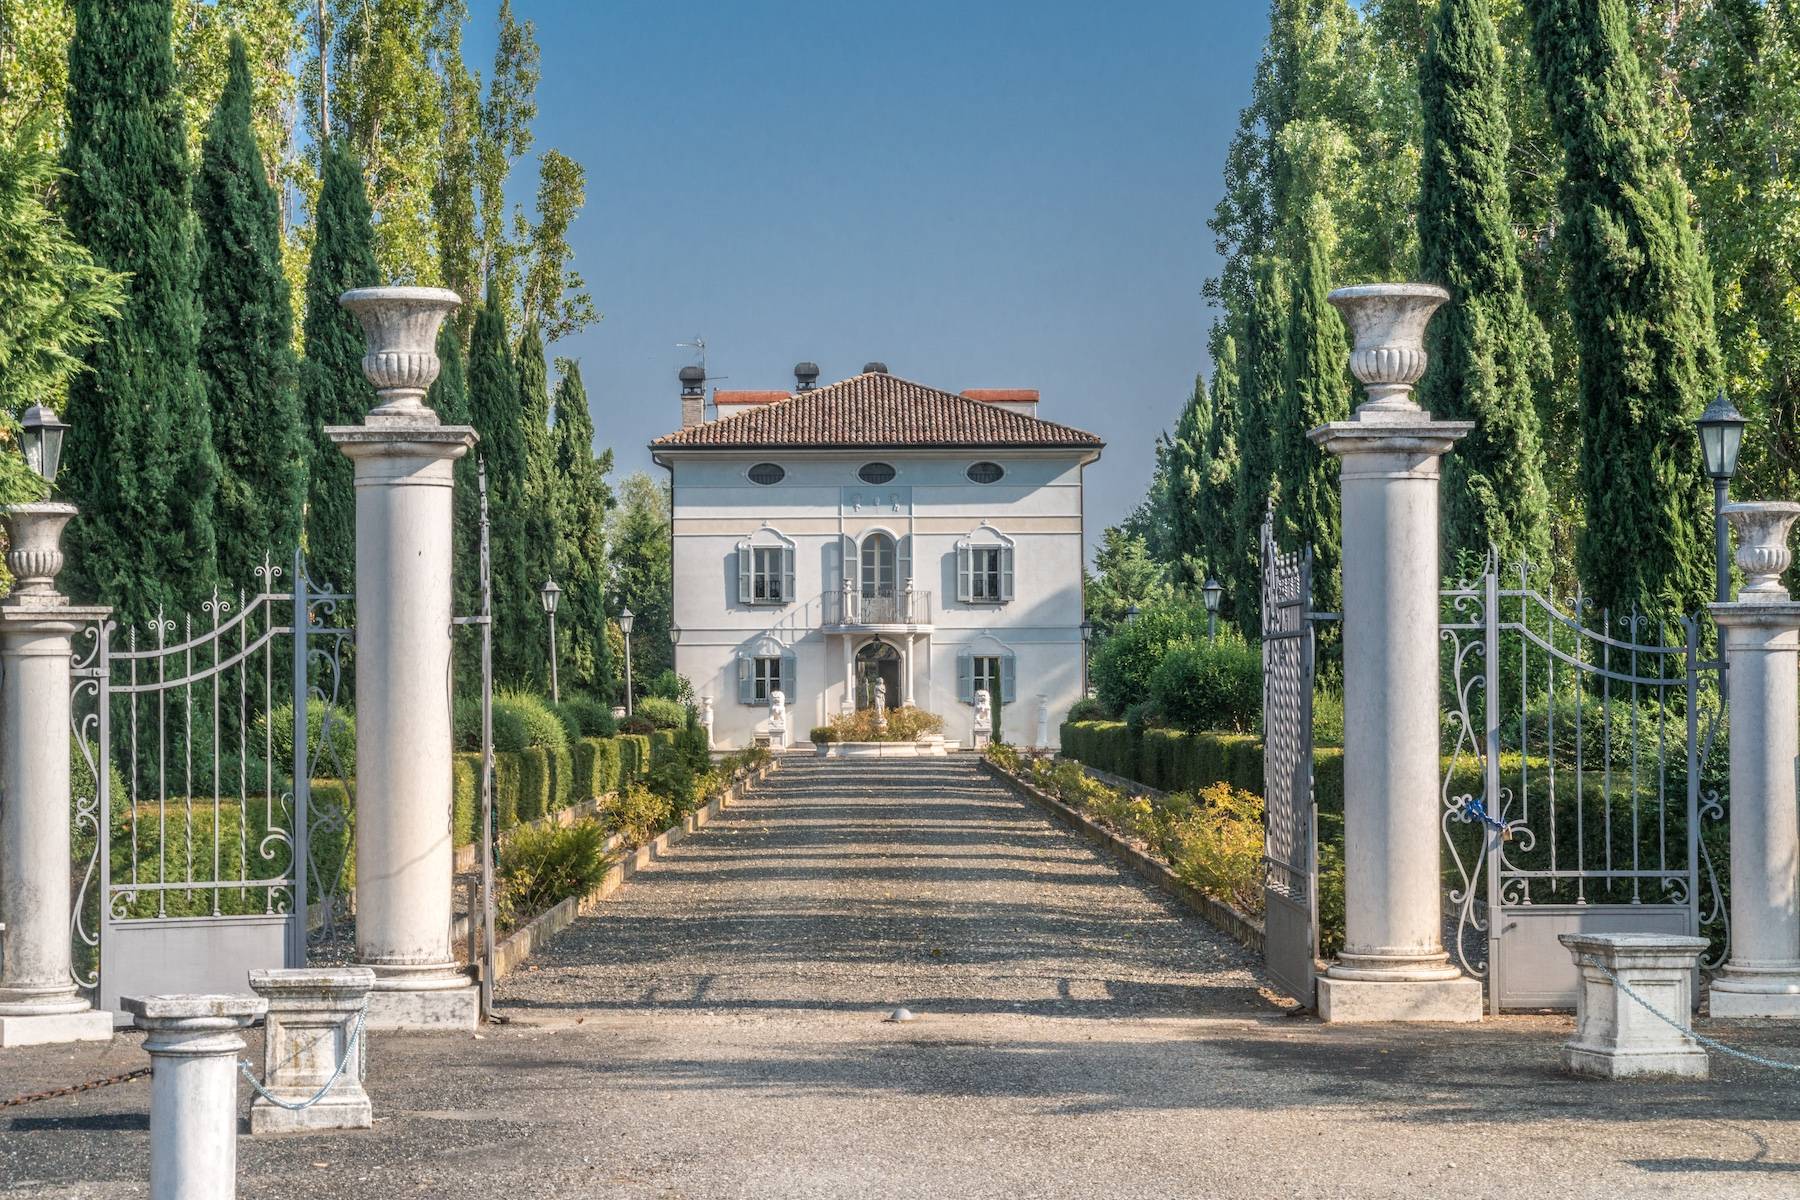 Prestigious historical villa in the in the countryside of Reggio Emilia